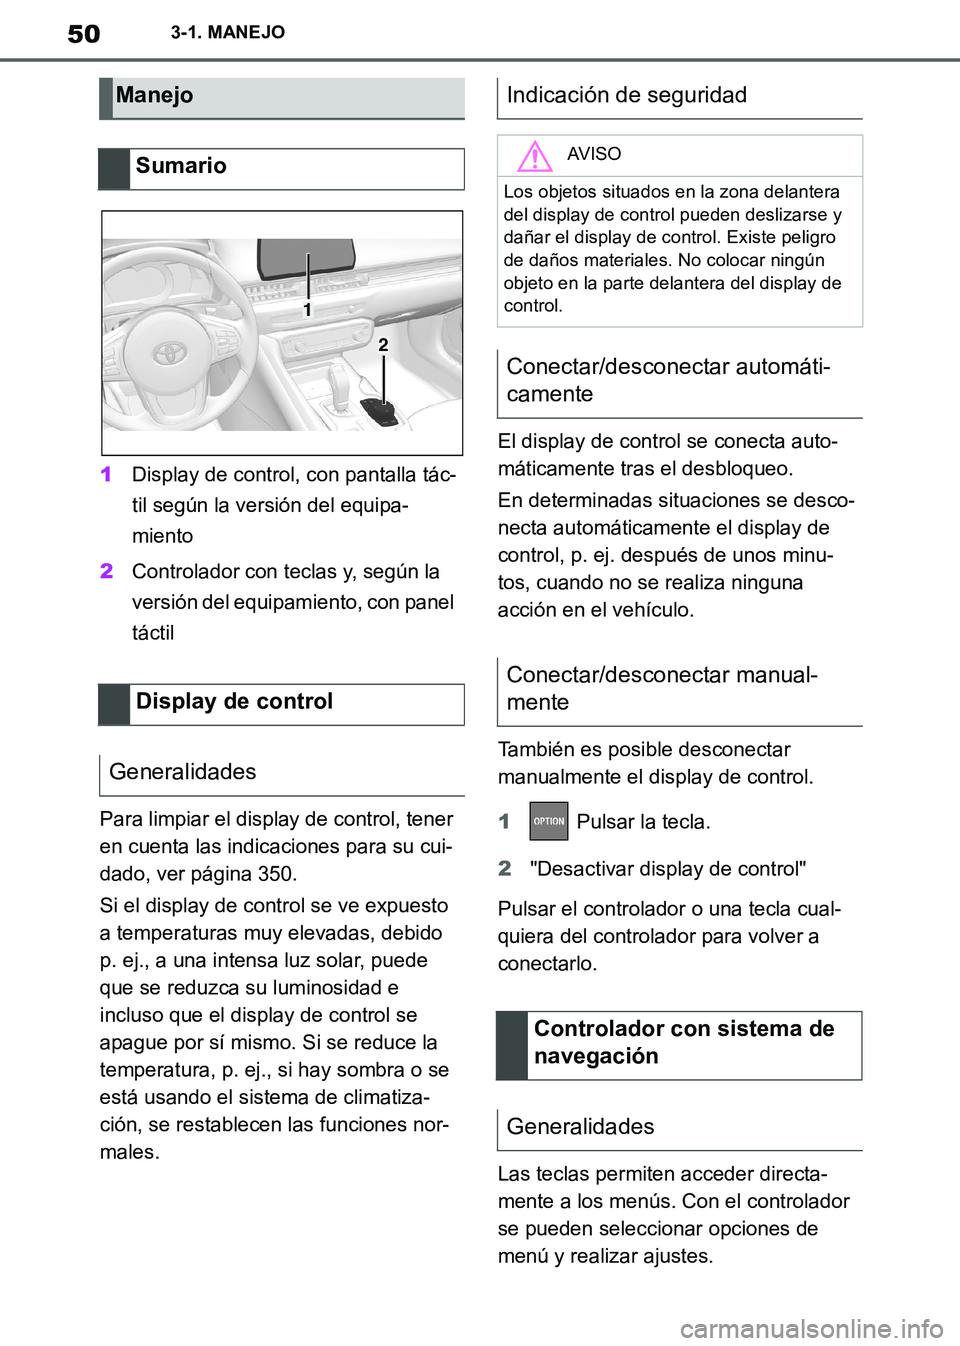 TOYOTA SUPRA 2019  Manuale de Empleo (in Spanish) 50
Supra Owners Manual_ES
3-1. MANEJO
1Display de control, con pantalla tác-
til según la versión del equipa-
miento
2Controlador con teclas y, según la 
versión del equipamiento, con panel 
tá